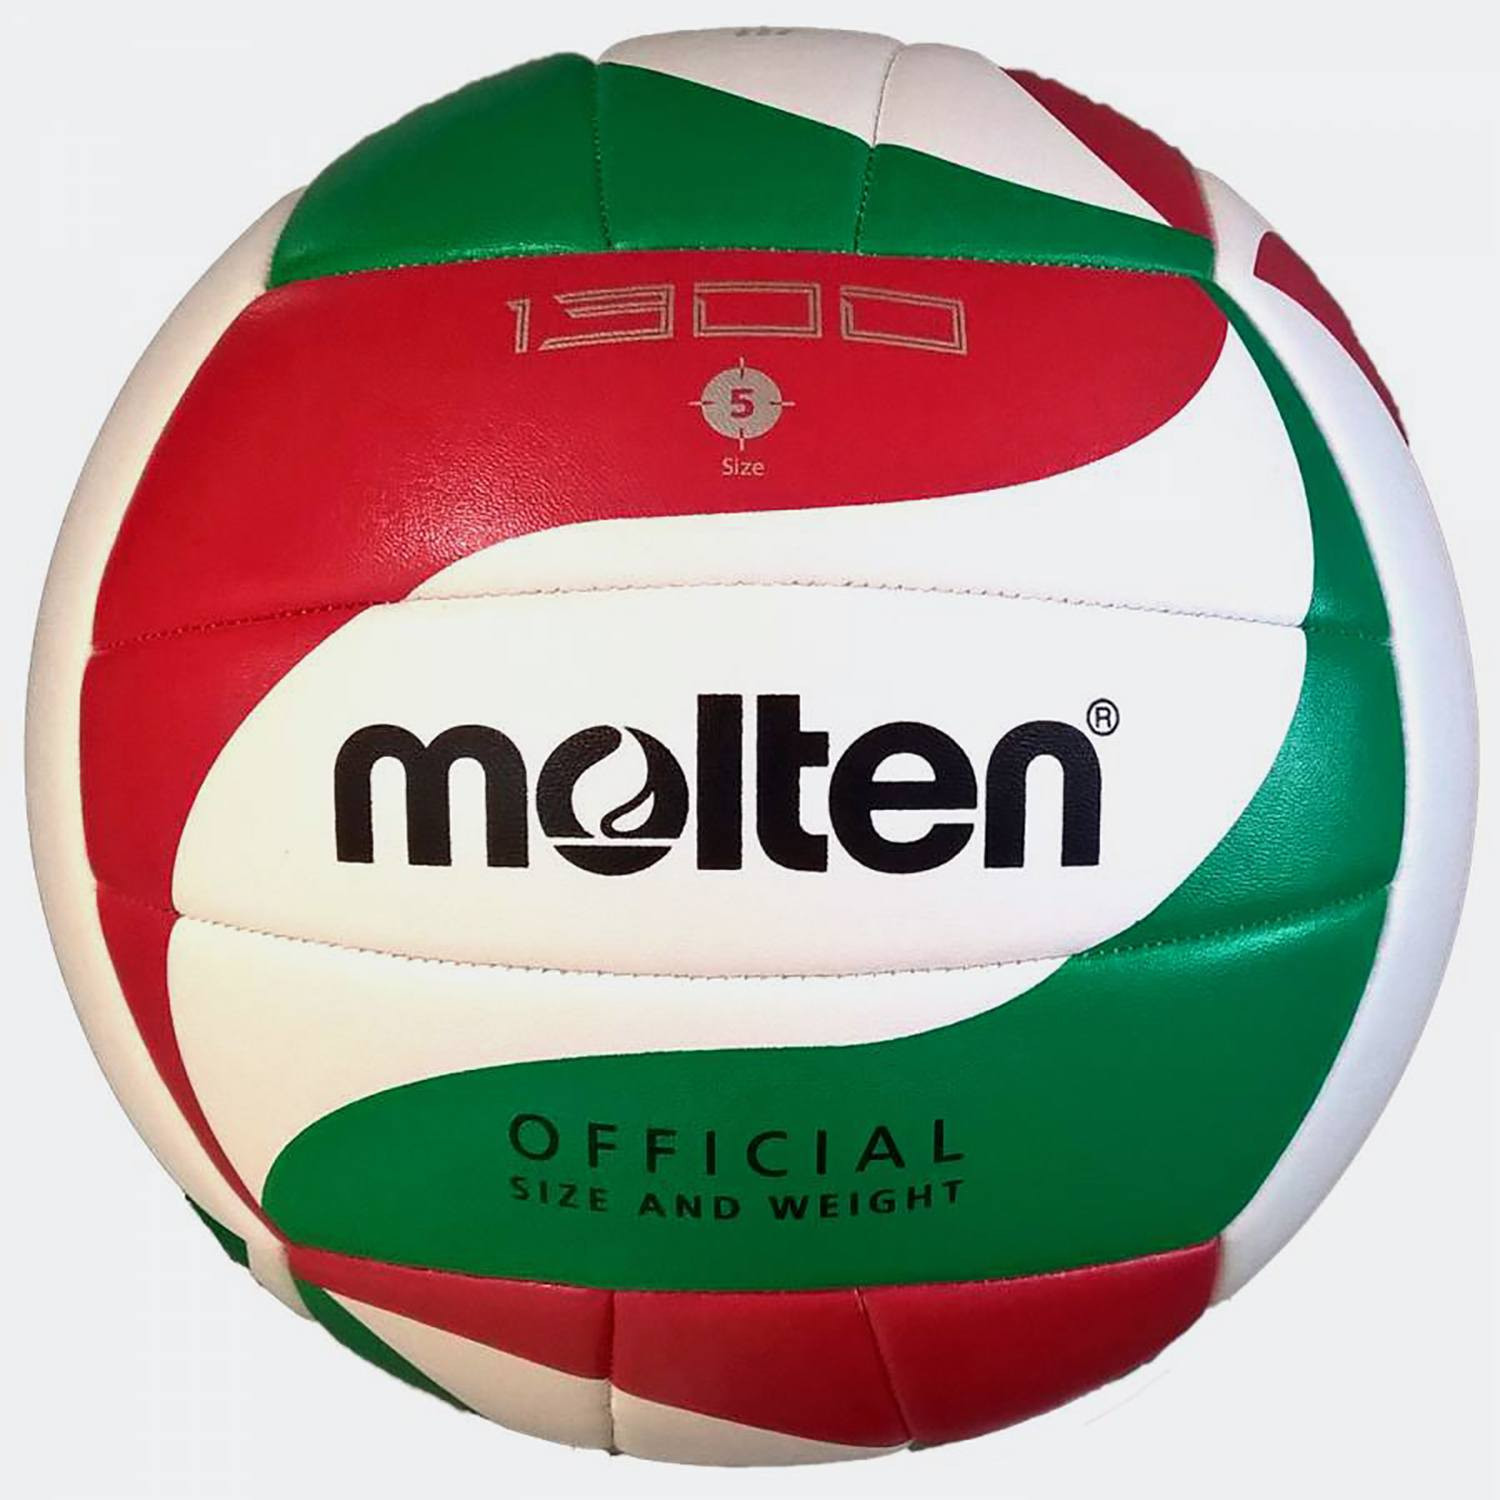 Molten Machine Stitched Volleyball No. 5 (9000041329_42056)